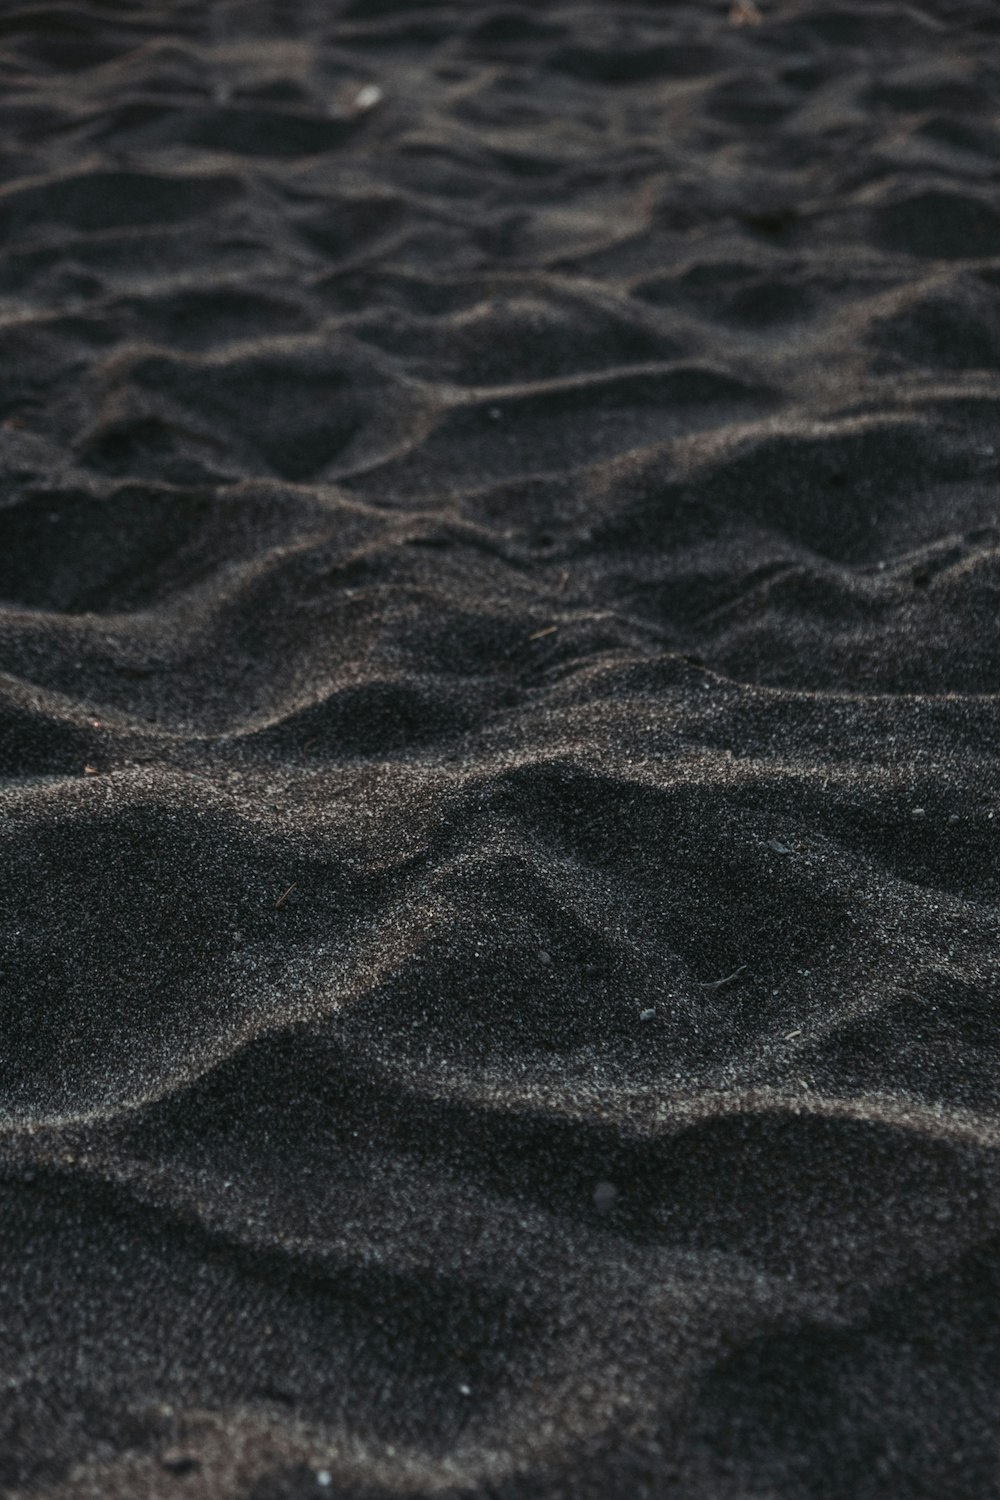 arena marrón con gotas de agua